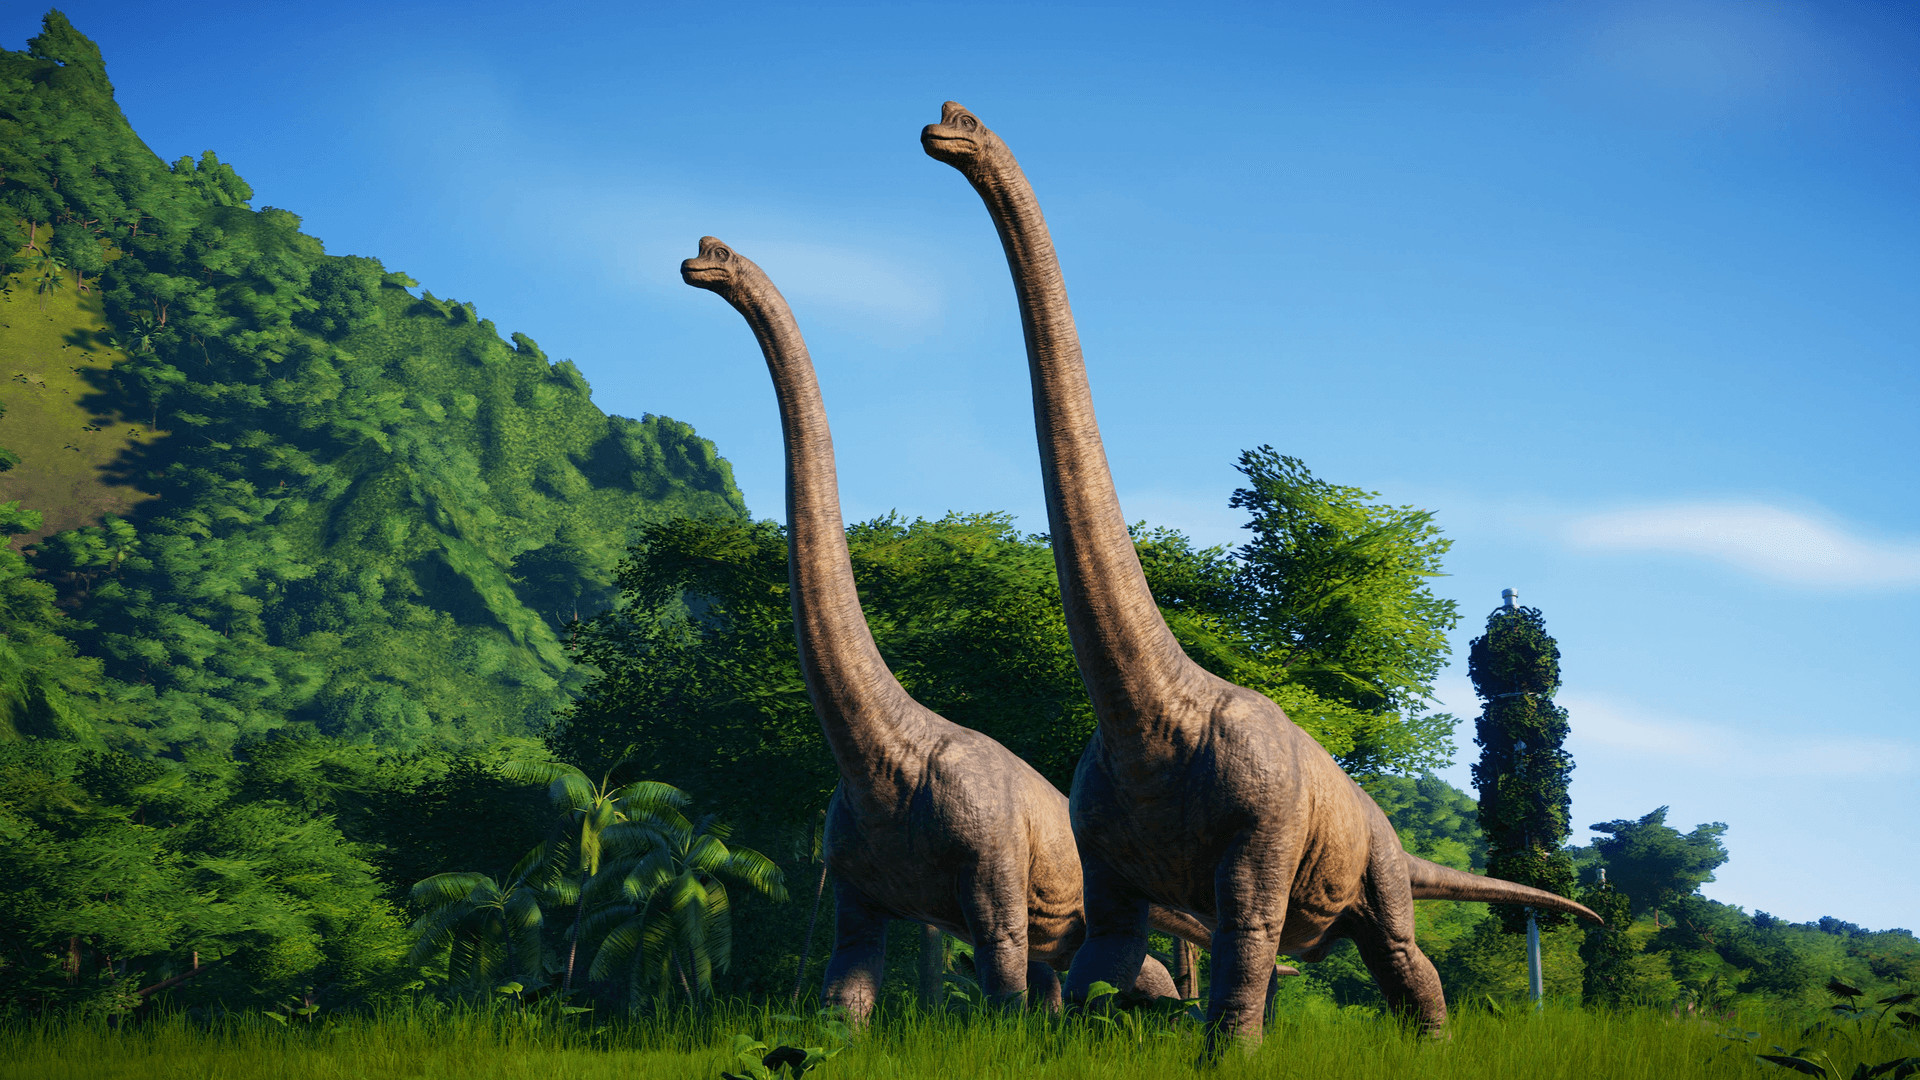 <b>Jurassic World Evolution</b>
<br>
<br>
S ovom igrom se možete postaviti u središte Jurassic franšize i izgraditi svoj vlastiti Jurski park. Kreirate vlastite dinosaure, koji mogu razmišljati, osjećati i reagirati na stvari u svojoj okolini. Ali pazite, dinosauri mogu i pobjeći iz vašeg parka, što vjerojatno nije scenarij koji biste htjeli.
<br>
<br>
Jurassic World Evolution je snižen 75 posto, sa <a href="https://store.steampowered.com/app/648350/Jurassic_World_Evolution/"><b><u>54,99 eura na 13,74 eura</u></b></a>.